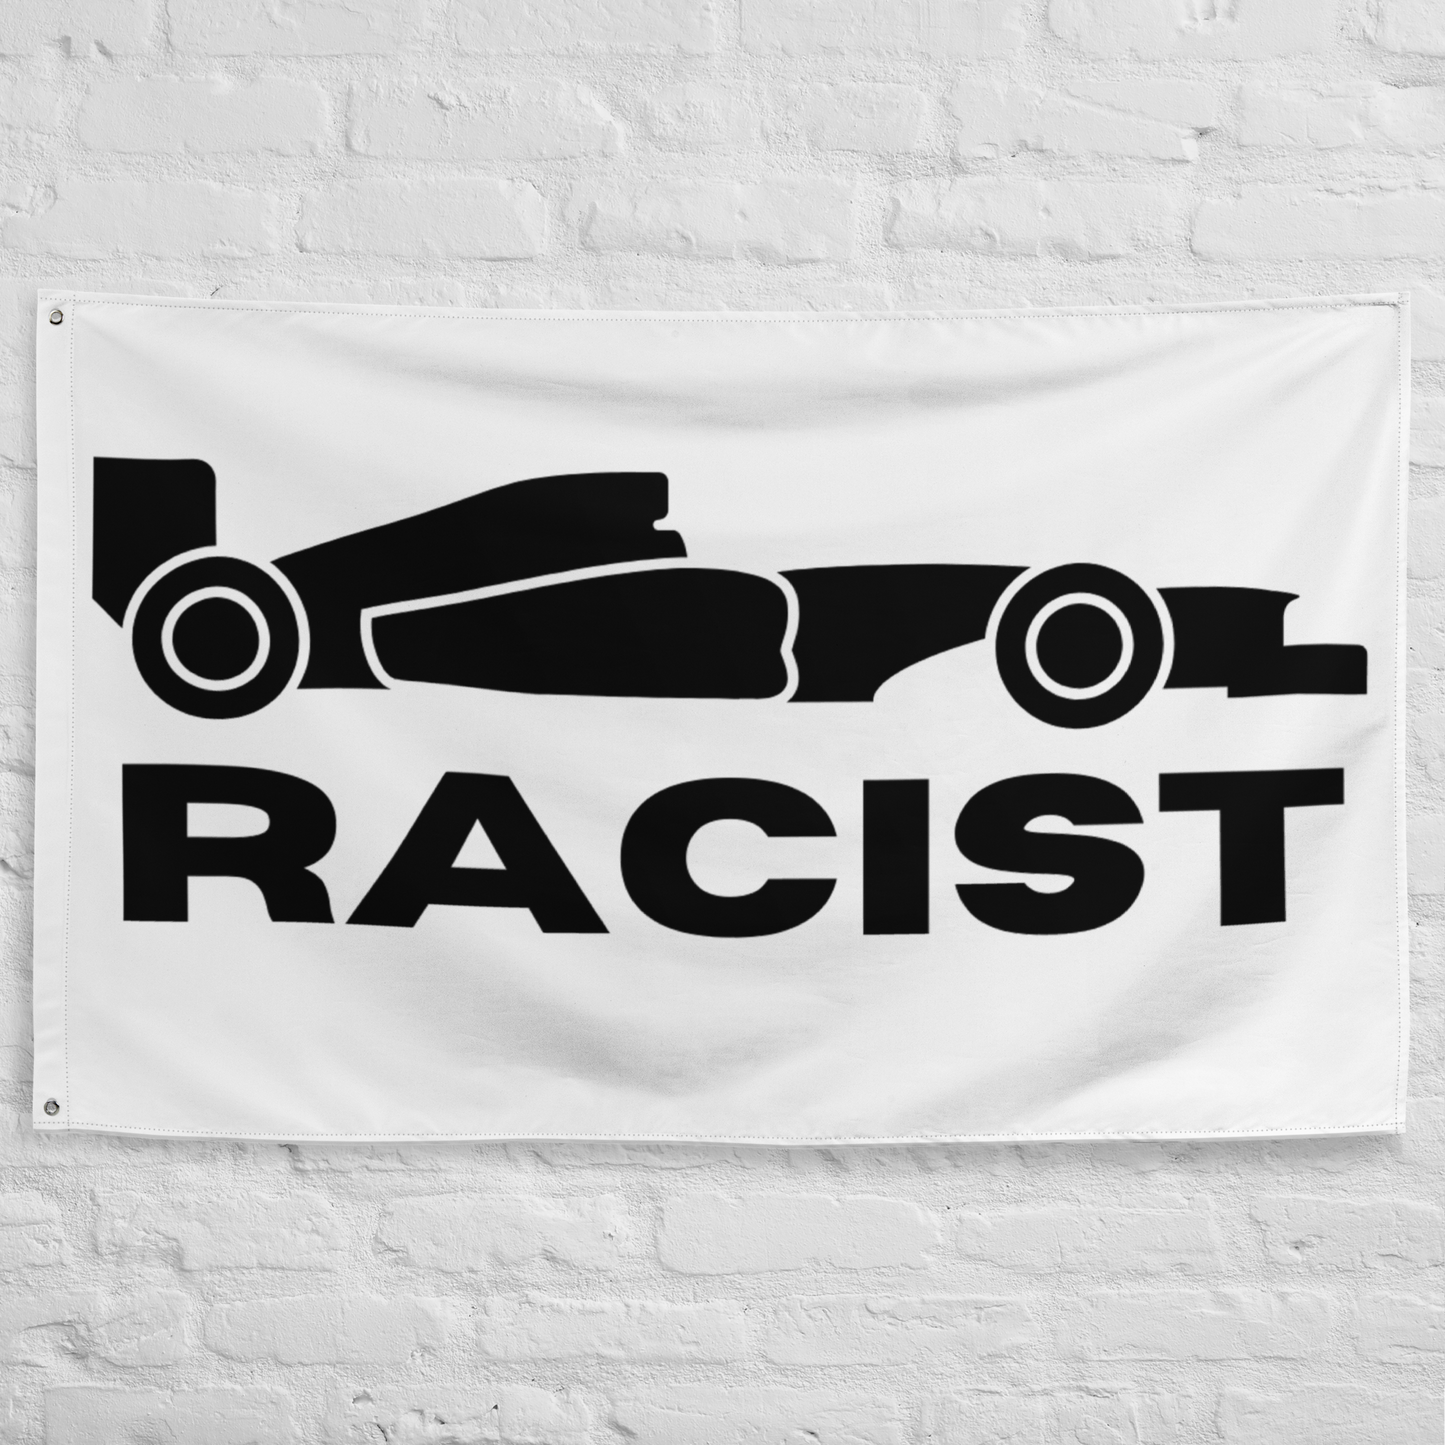 Racist Flag